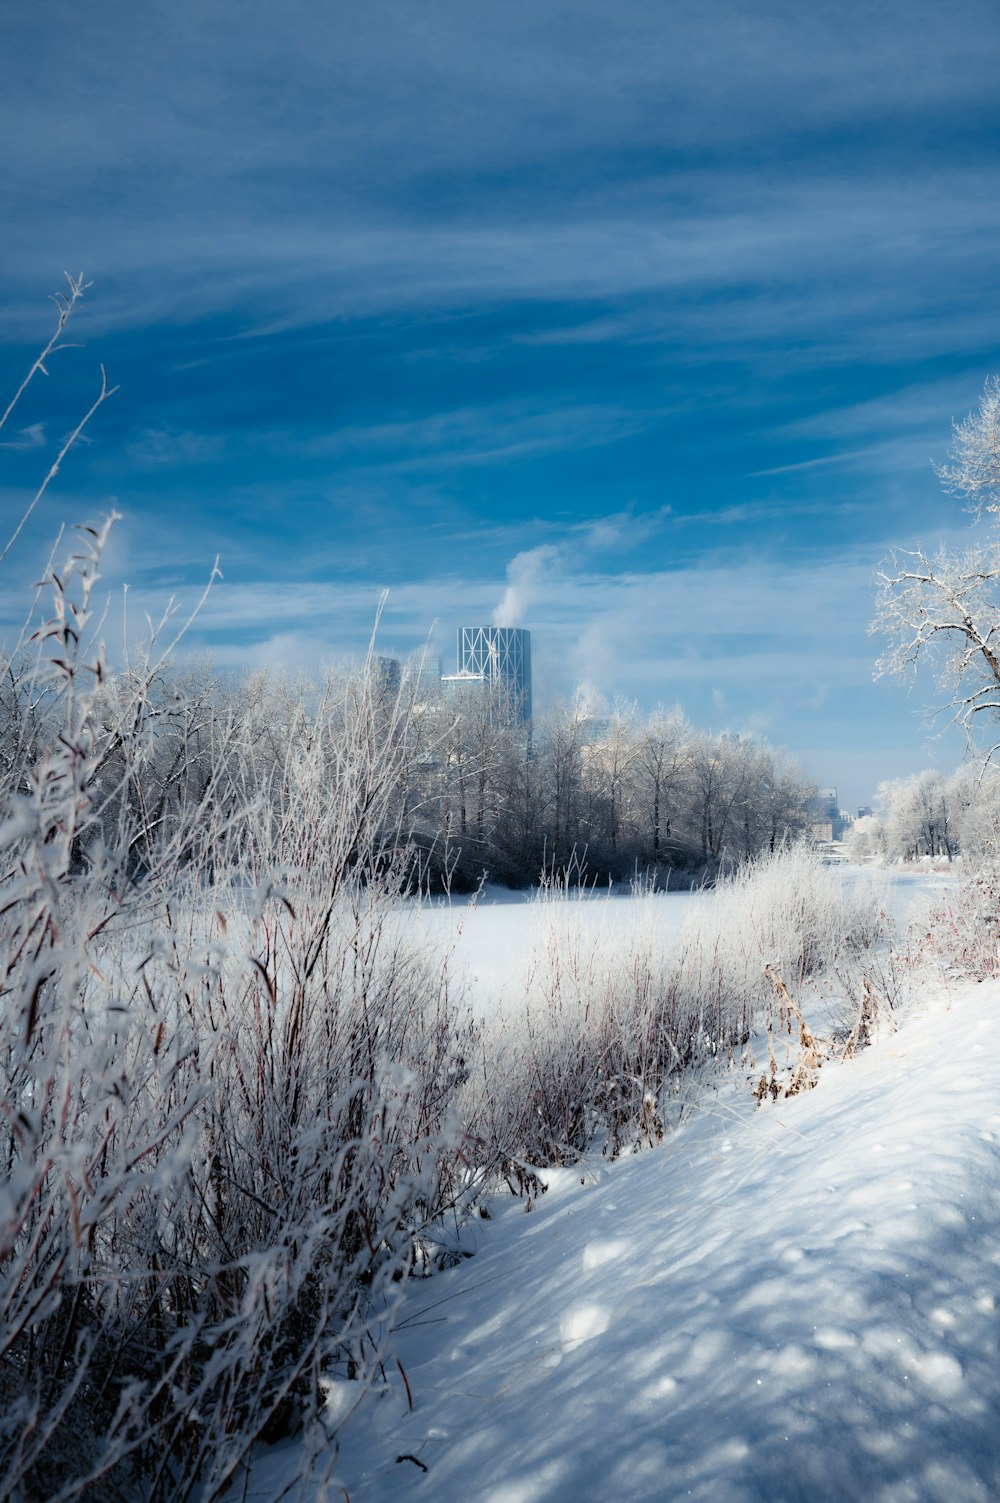 Snow Covered Field: Hãy xem bức tranh tuyệt đẹp của một cánh đồng phủ tuyết mịn màng, tĩnh lặng. Bạn sẽ thấy được vẻ đẹp của thiên nhiên vào mùa đông, cùng những vệt nắng rực rỡ chiếu xuống. Hình ảnh này sẽ giúp bạn thư giãn và đưa bạn tới một thế giới bình yên.